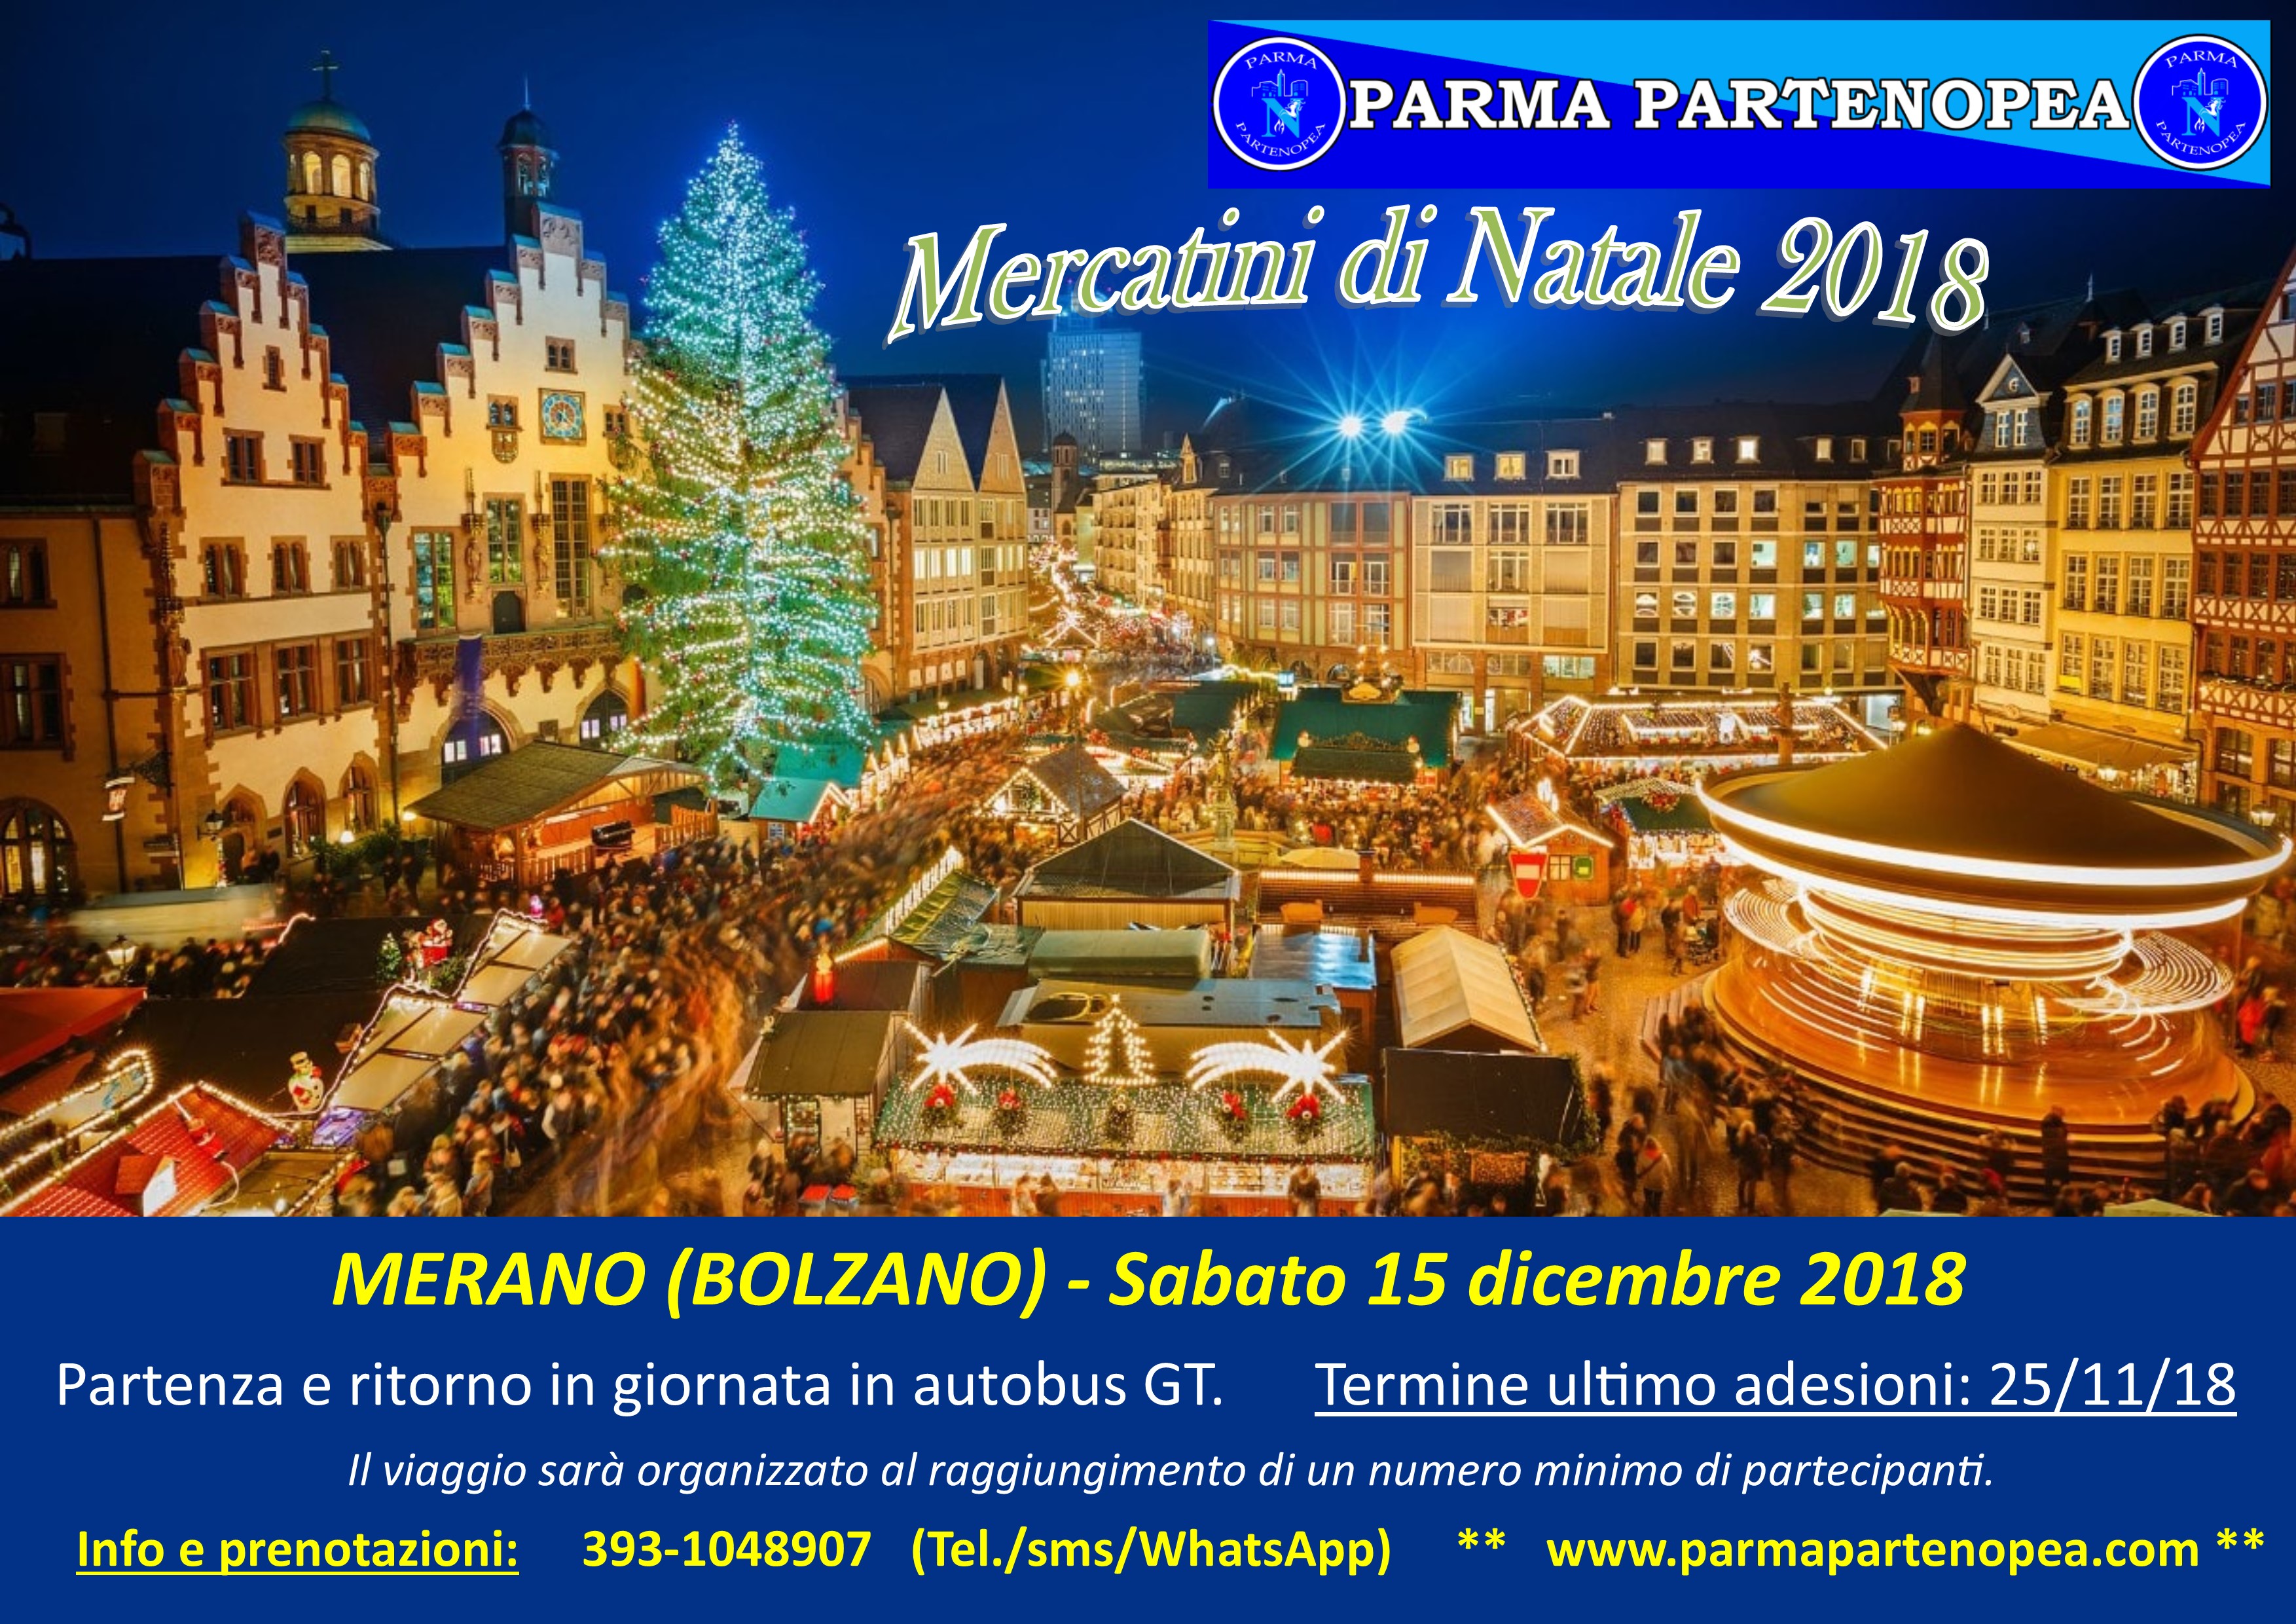 Foto Di Merano A Natale.Mercatini Di Natale 2018 A Merano Bolzano Con Parma Partenopea Sabato 15 Dicembre 2018 Parma Partenopea